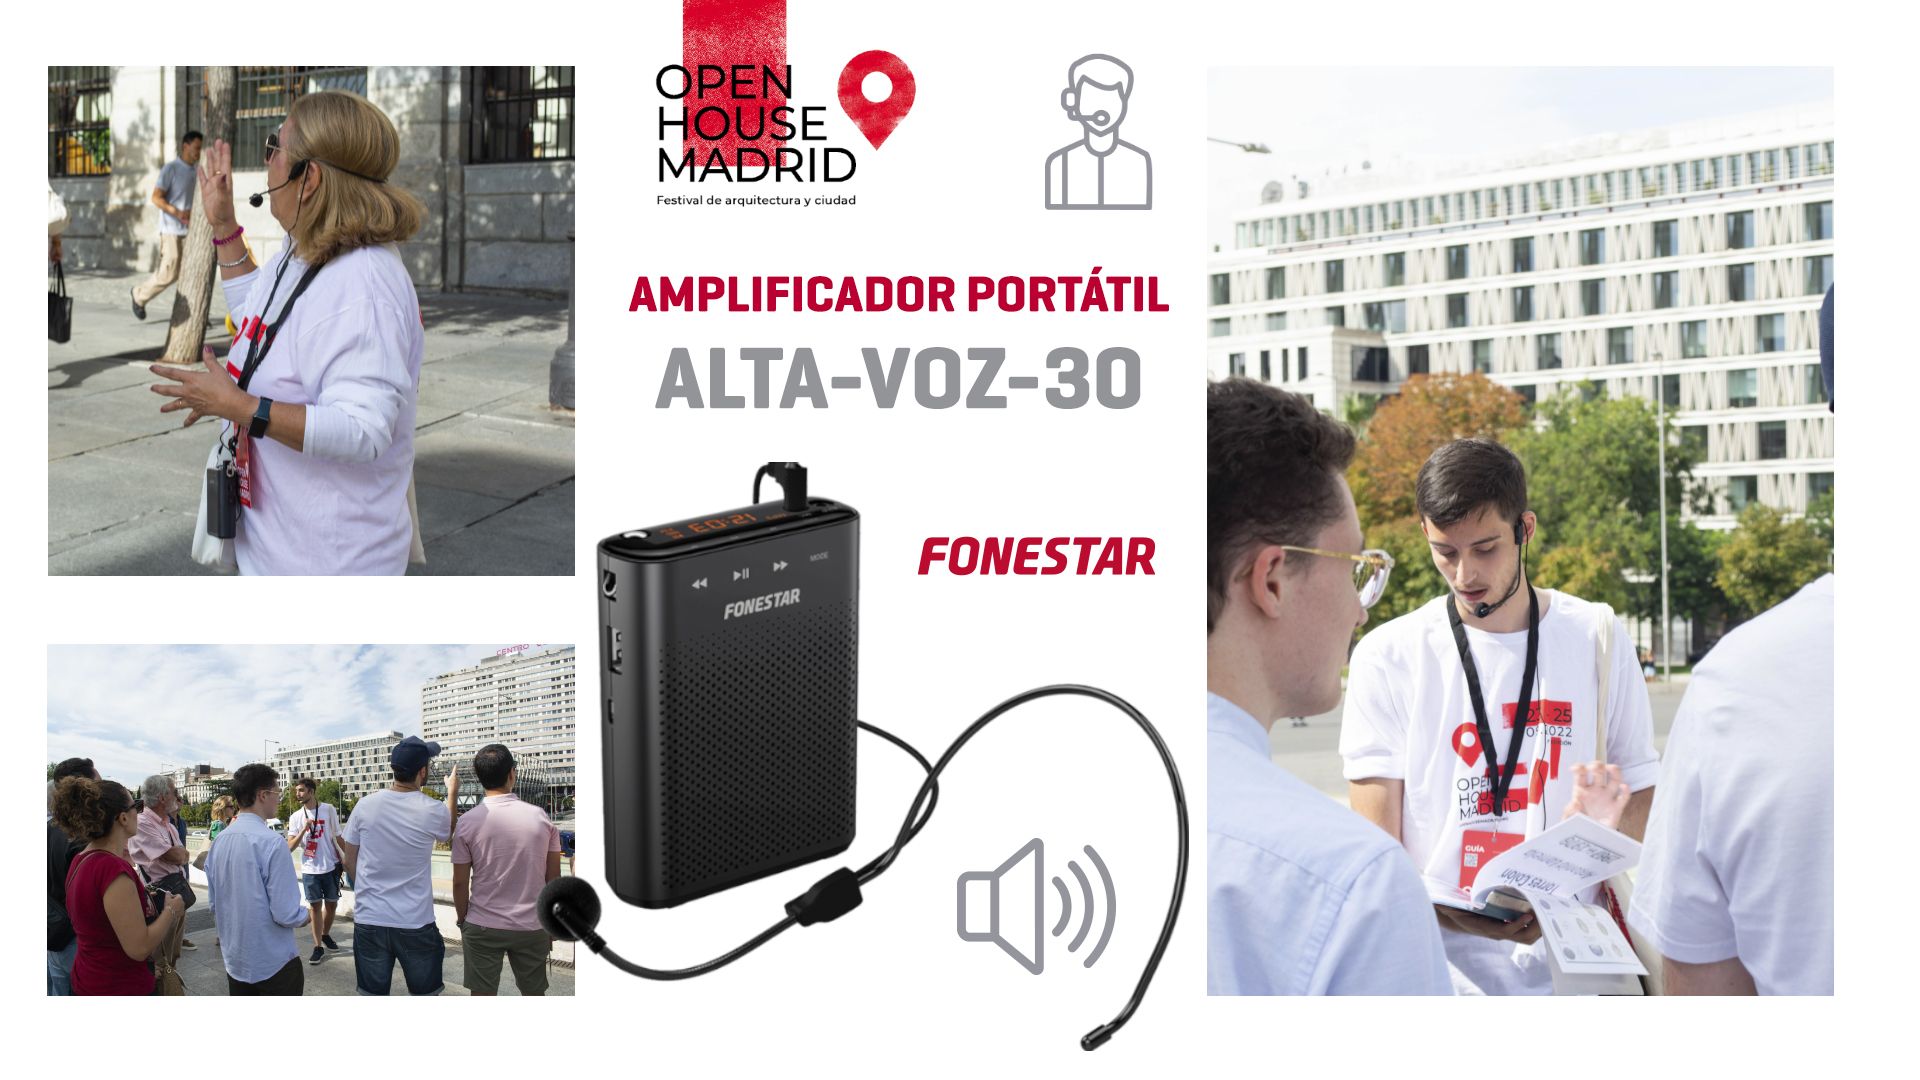 Notre amplificateur portable ALTA-VOZ-30 protagoniste à l’Open House Madrid